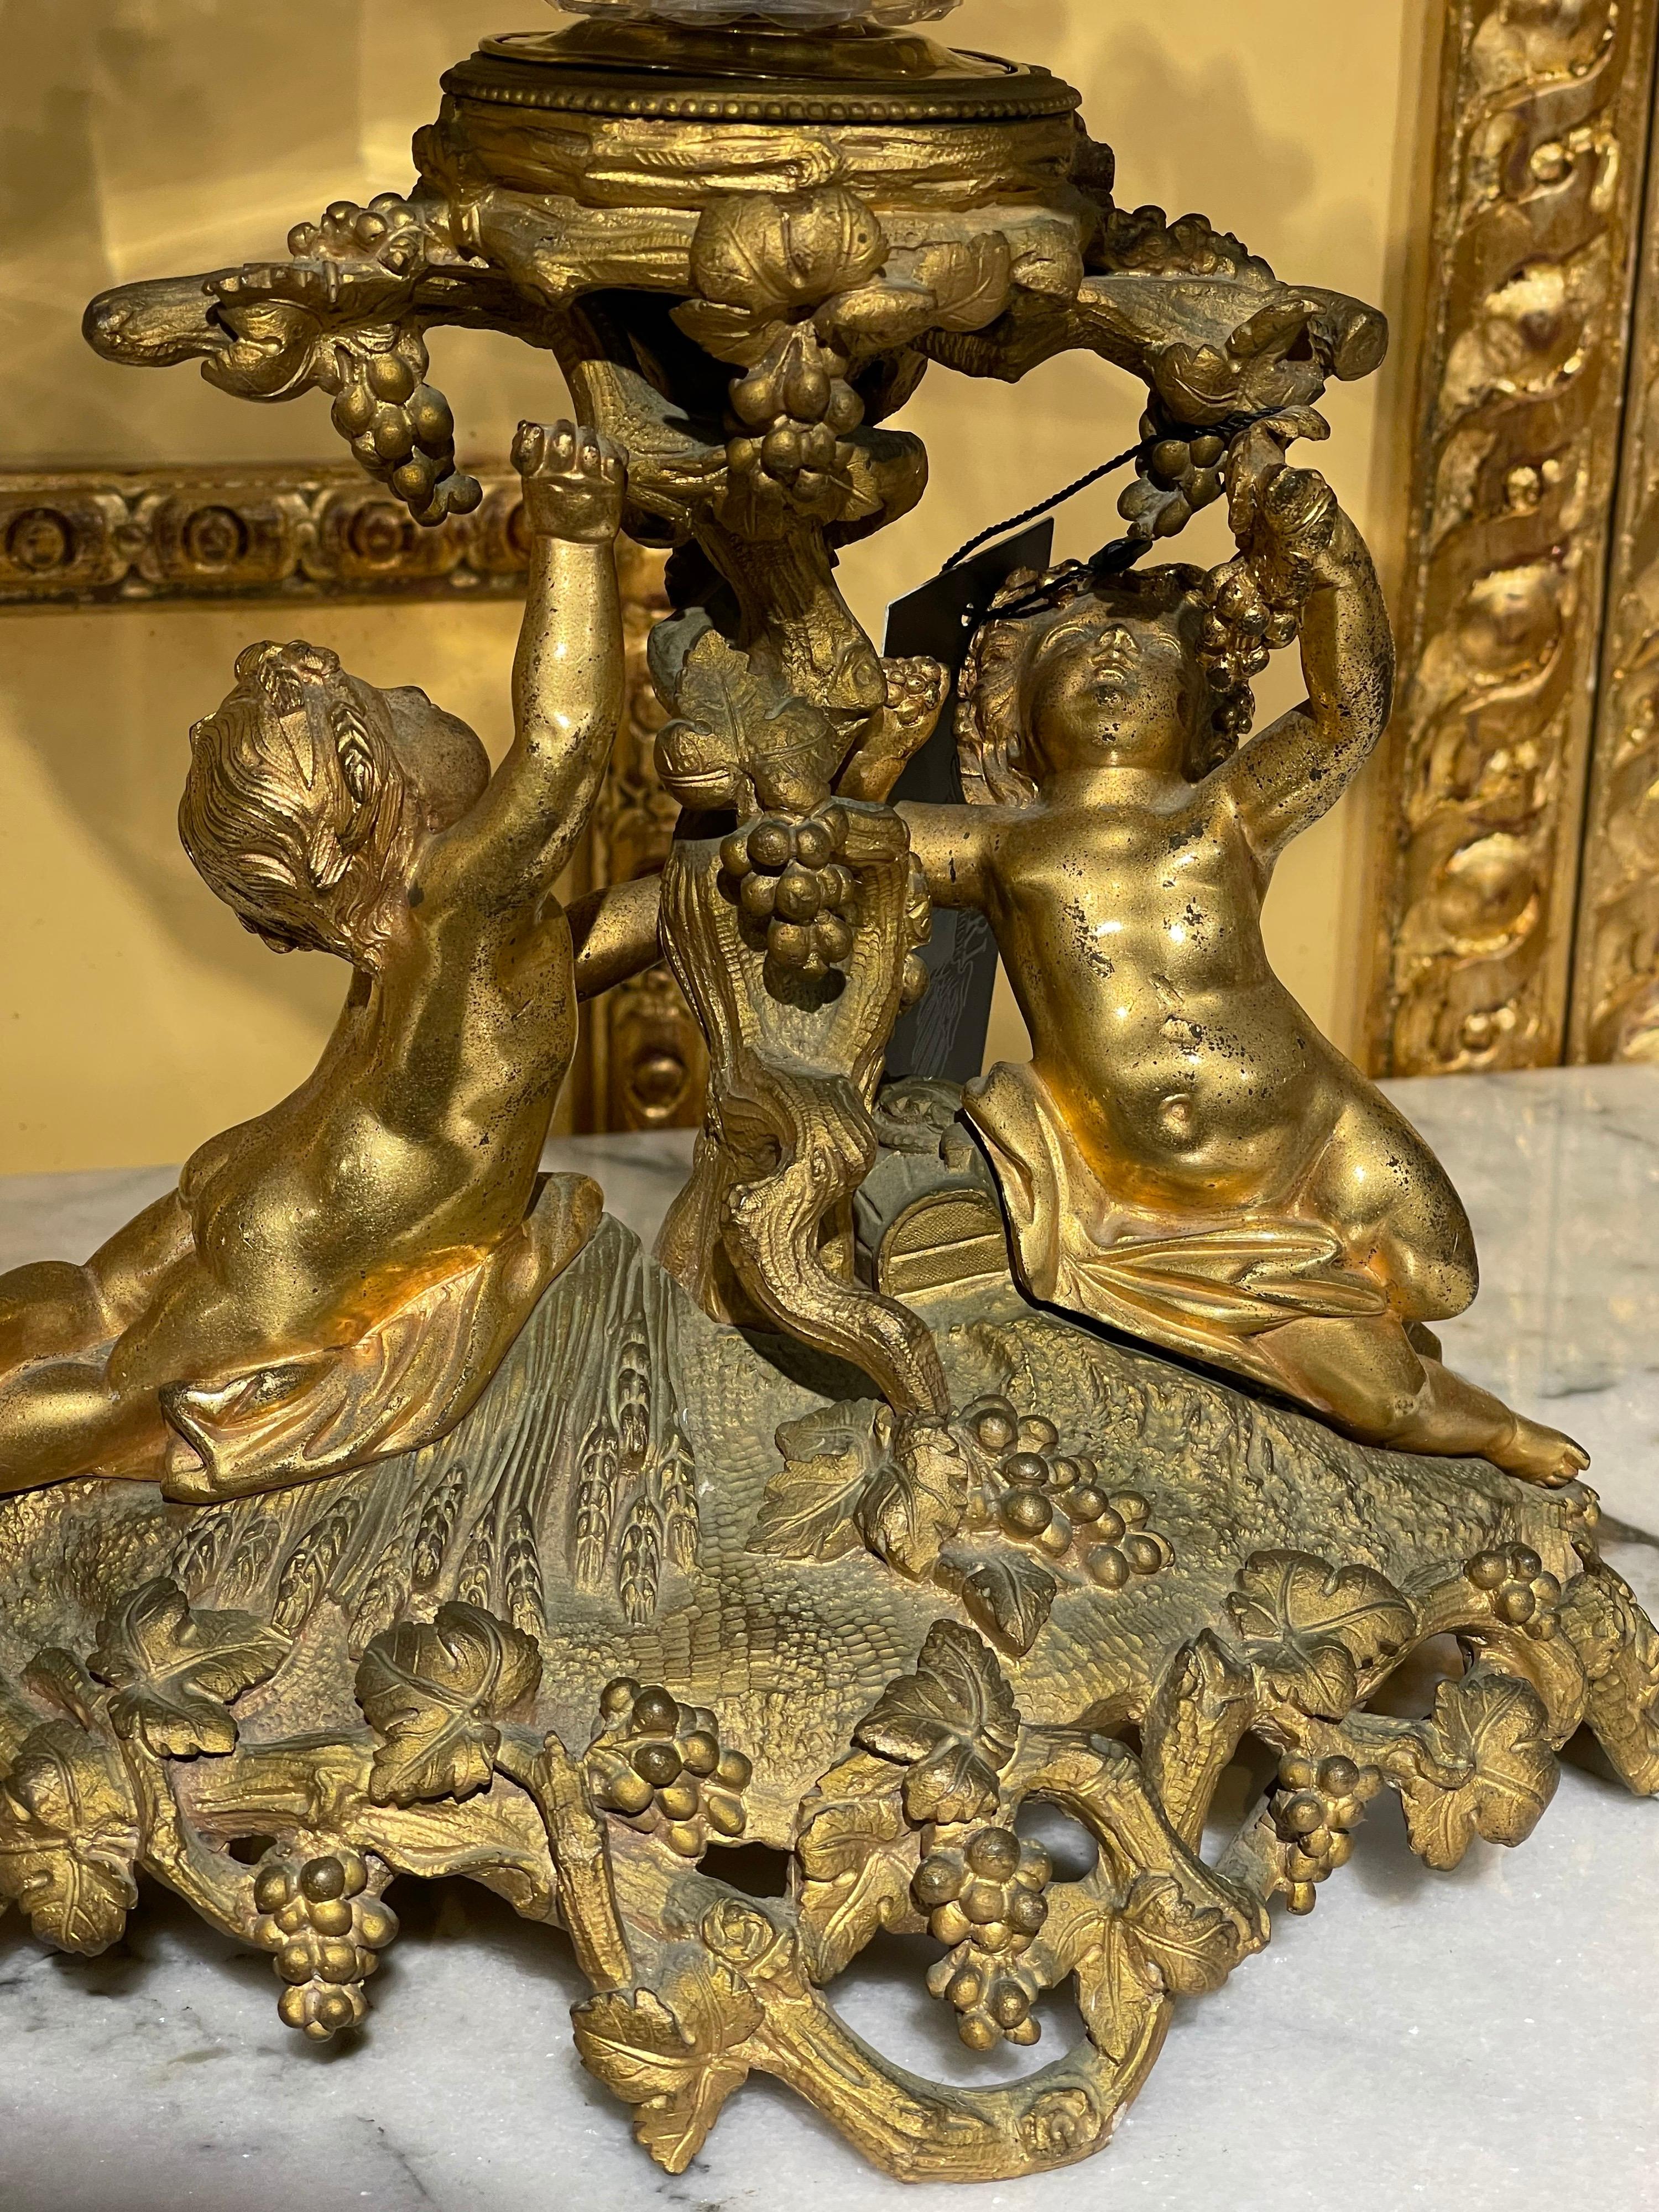 Einzigartige französische Tischplatte, feuervergoldete Bronze um 1860.

Feuervergoldete Bronze, Sockel mit zwei Puttos, die die antike, handgeschliffene runde Glasschale halten. Äußerst fein gearbeitetes Mittelstück. Wunderbare Form. Bronze